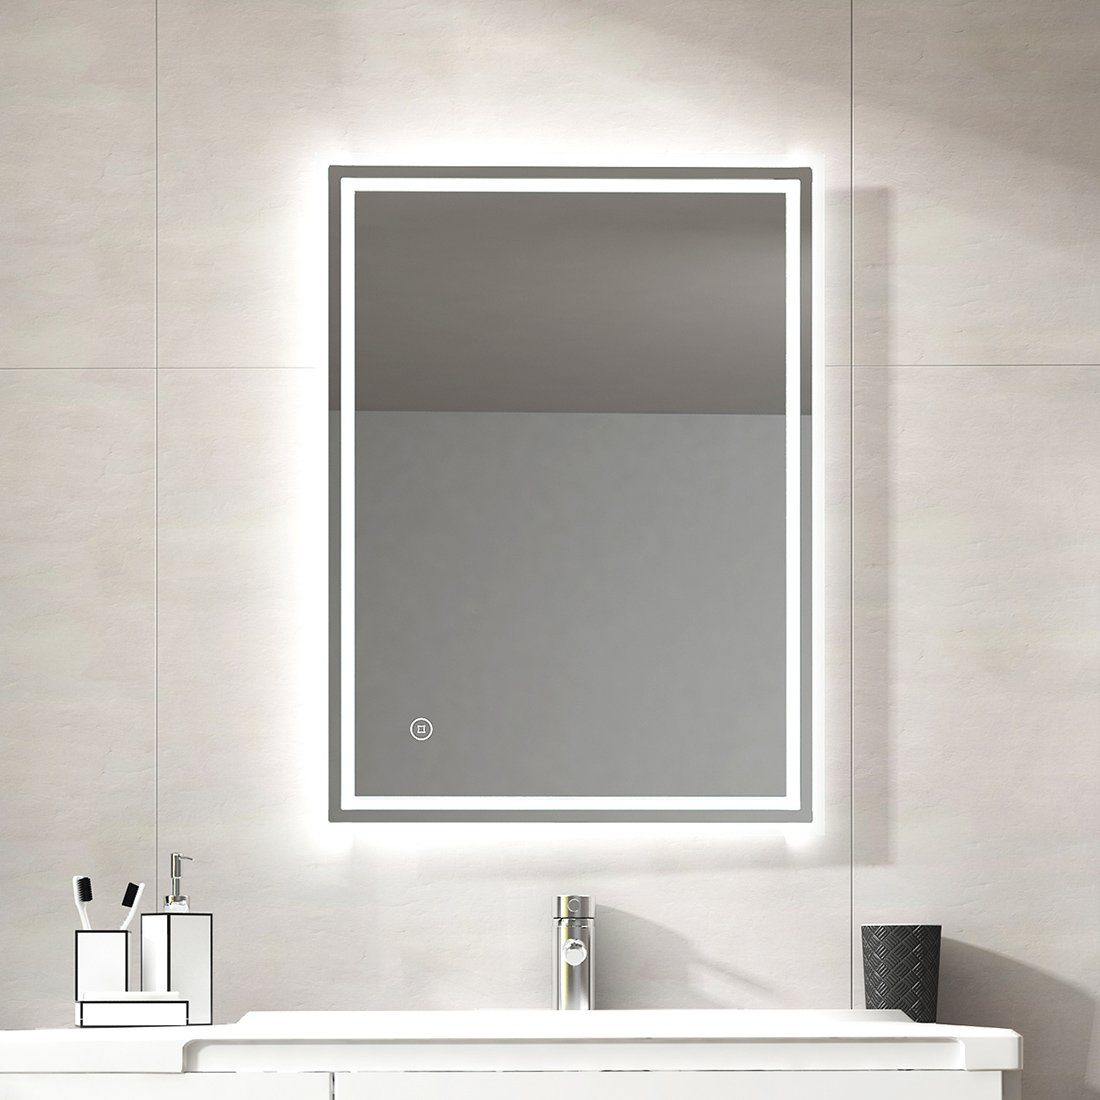 S'AFIELINA Badspiegel Rechteckiger Badezimmerspiegel mit Beleuchtung und Touchschalter, 3 Lichtfarben,Helligkeit Einstellbar,Beschlagfrei,IP44